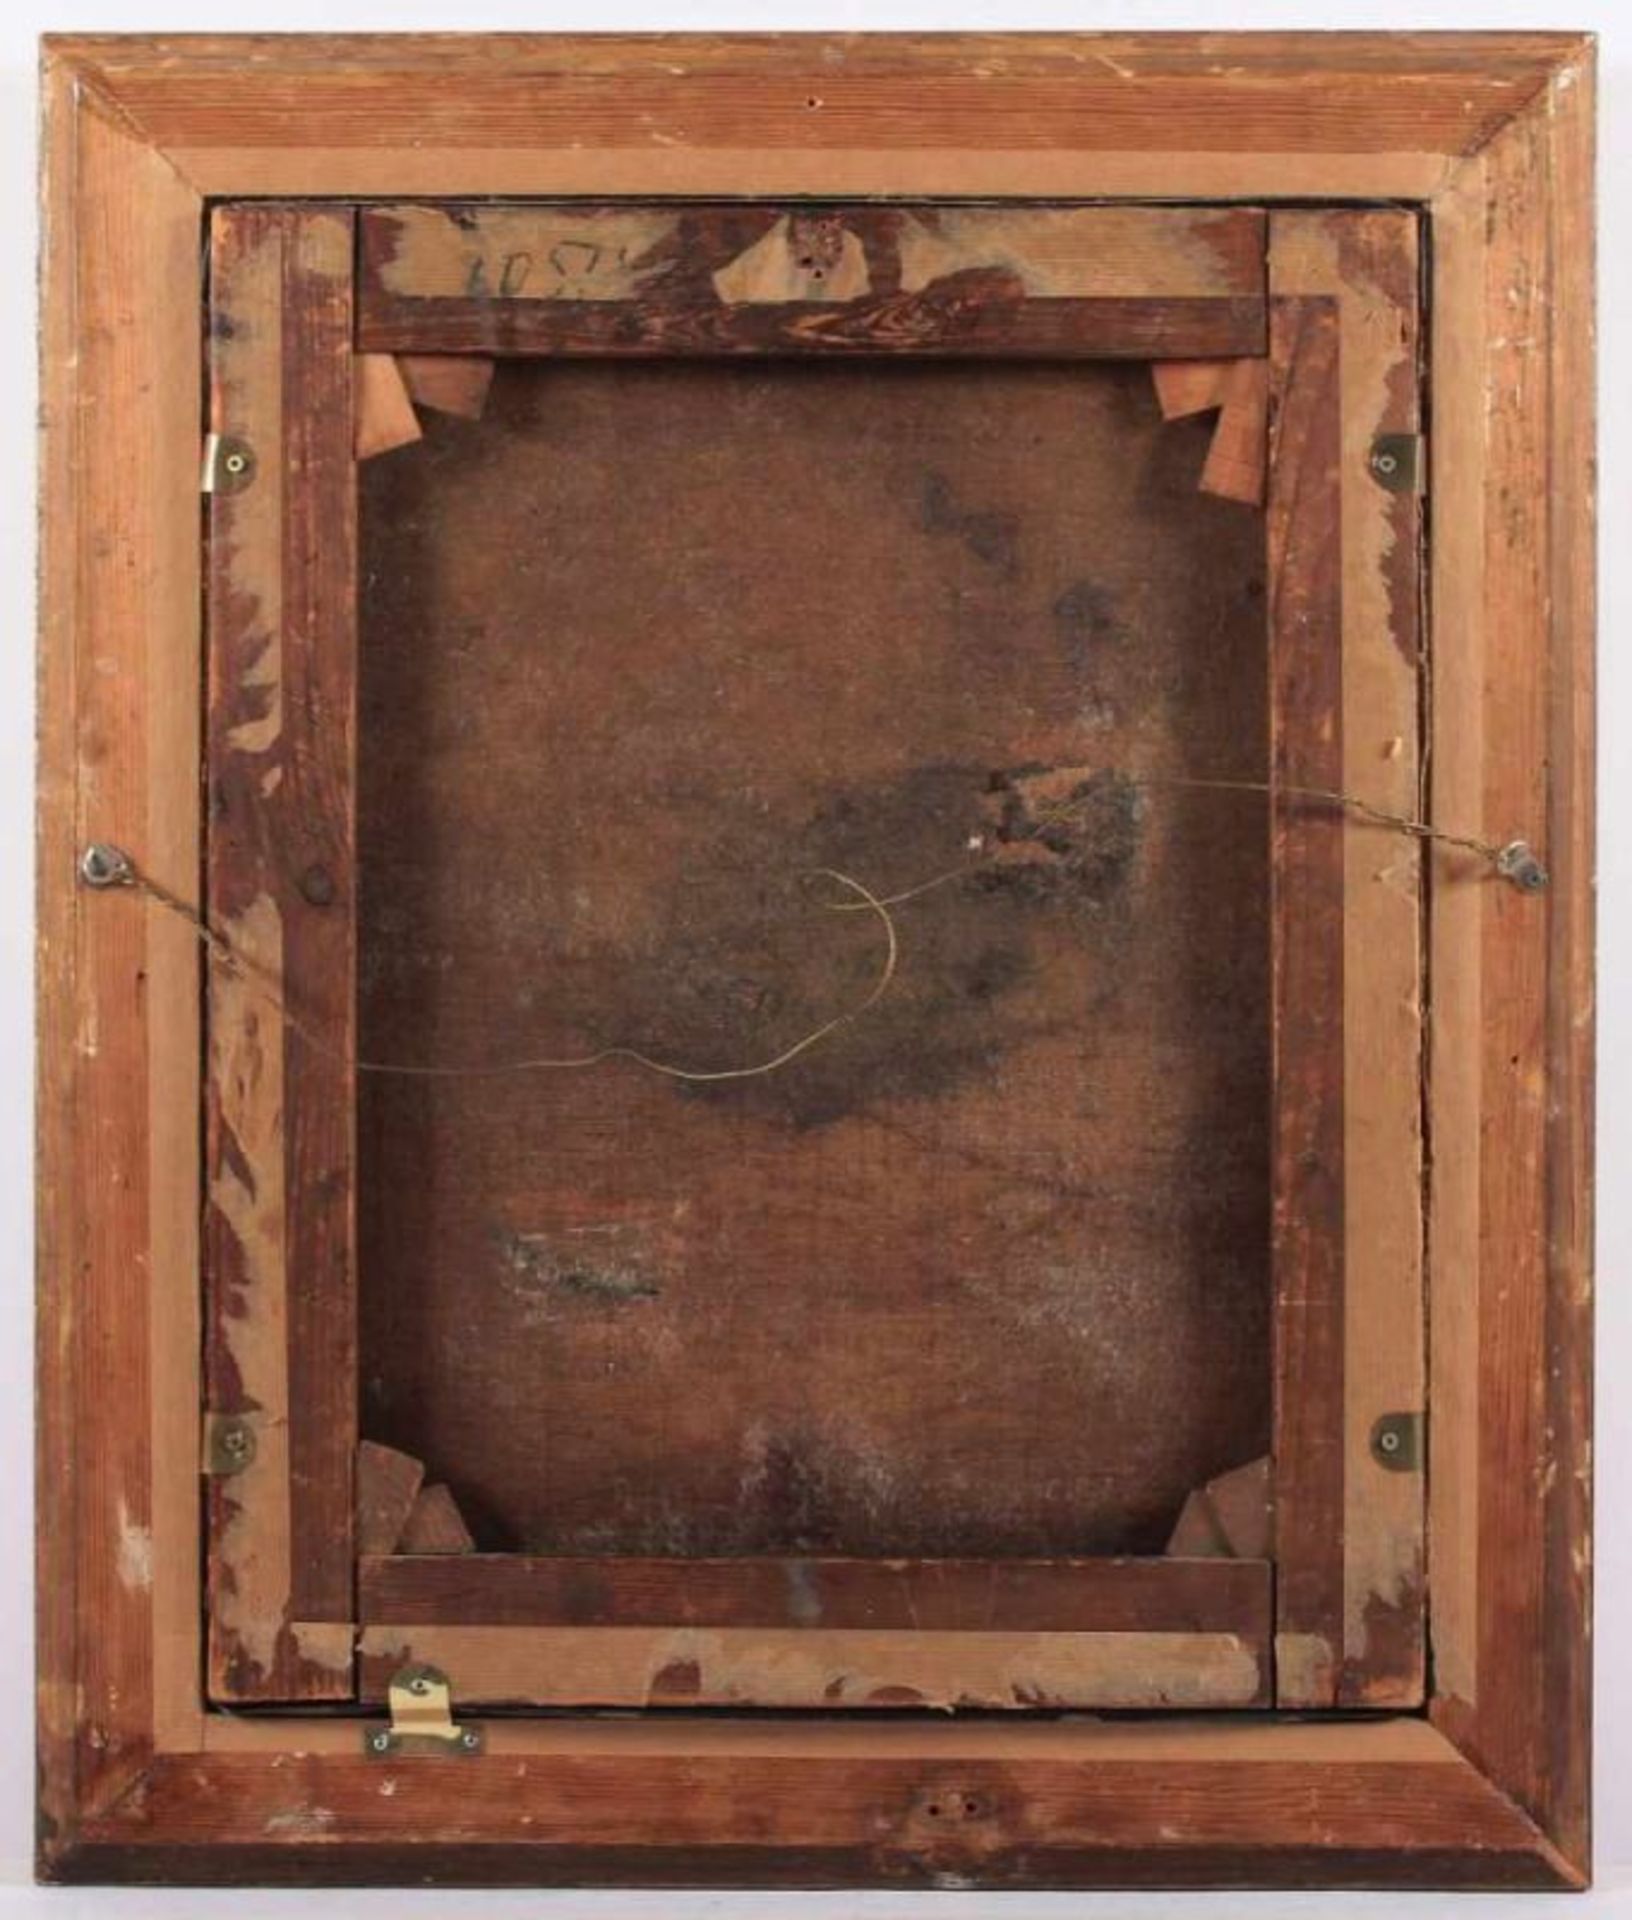 FRANKREICH 1.H.19.JH., "Bildnis eines Mannes im Profil", Öl/Lwd., 52 x 42, rest., R. 22.00 % buyer's - Bild 3 aus 3